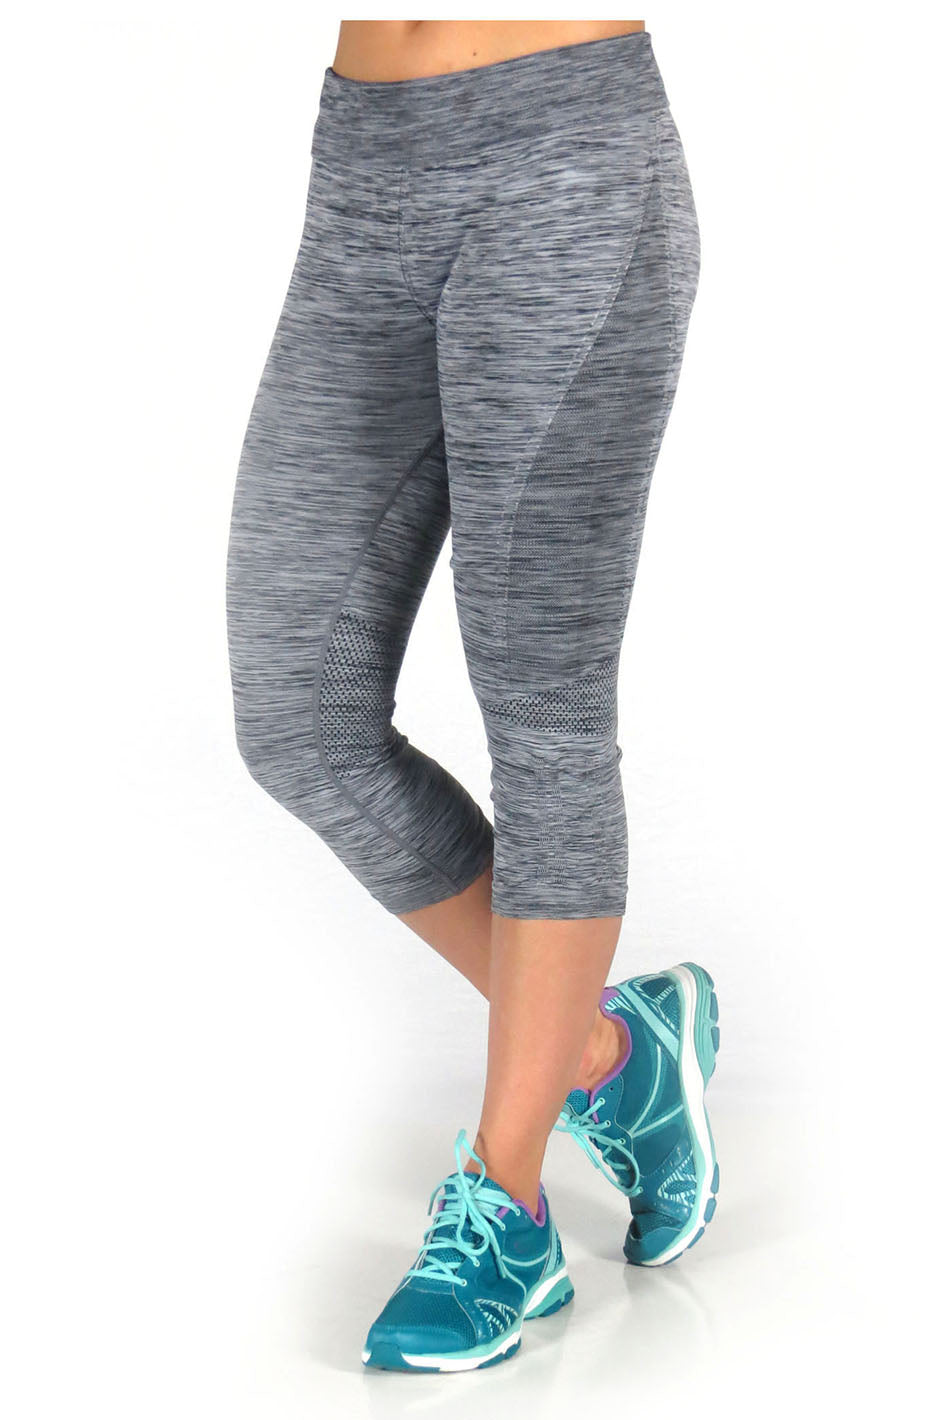 Tek Gear Pants Woman's Drytek M Workout Legging Gray Polyester Spandex